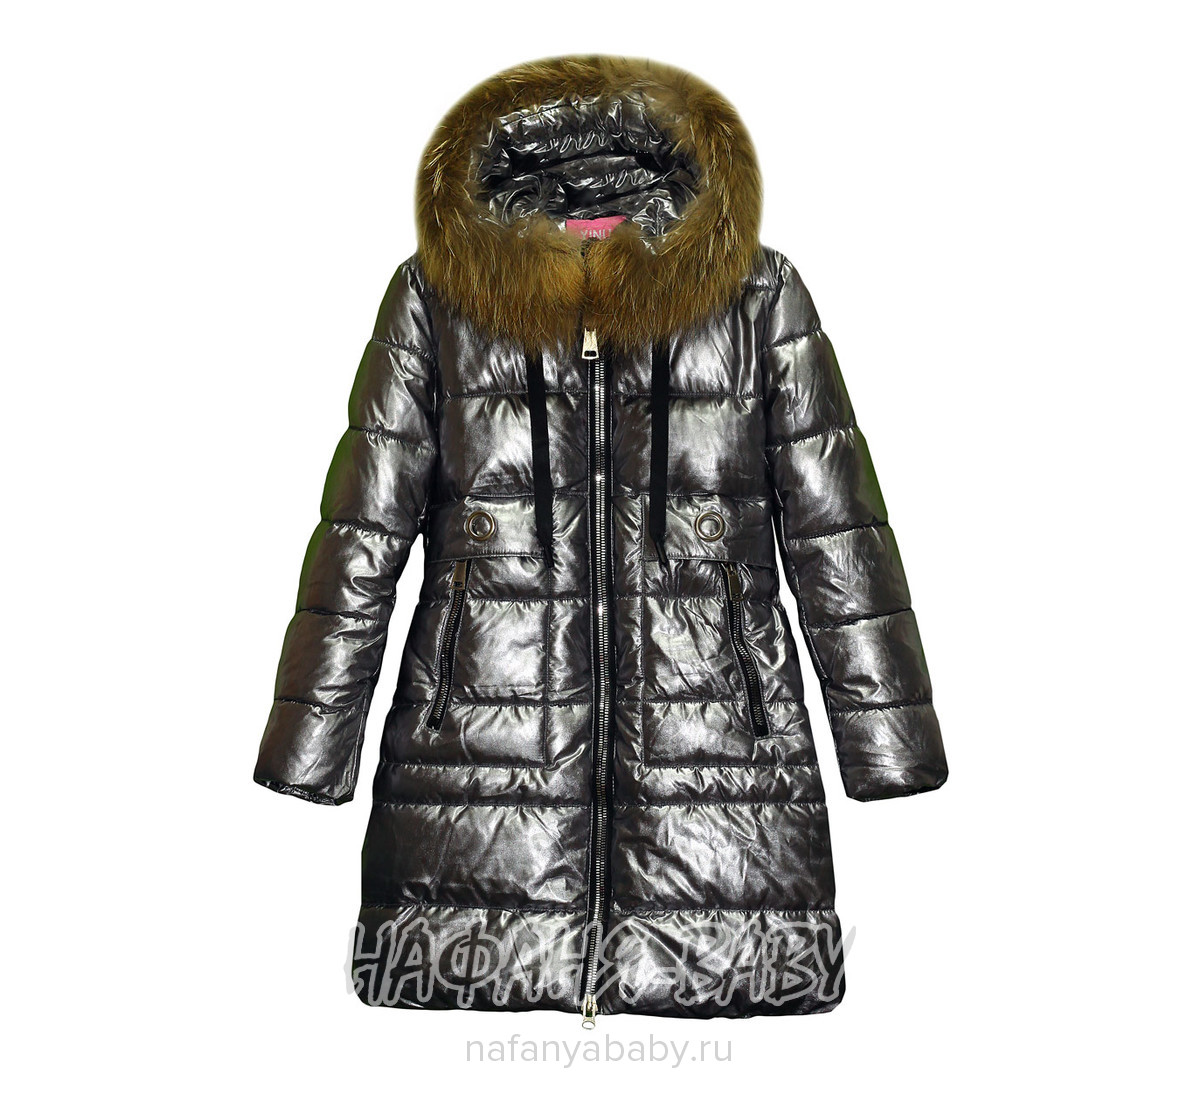 Зимнее подростковое пальто YINUO арт: 8810, 10-15 лет, 5-9 лет, оптом Китай (Пекин)